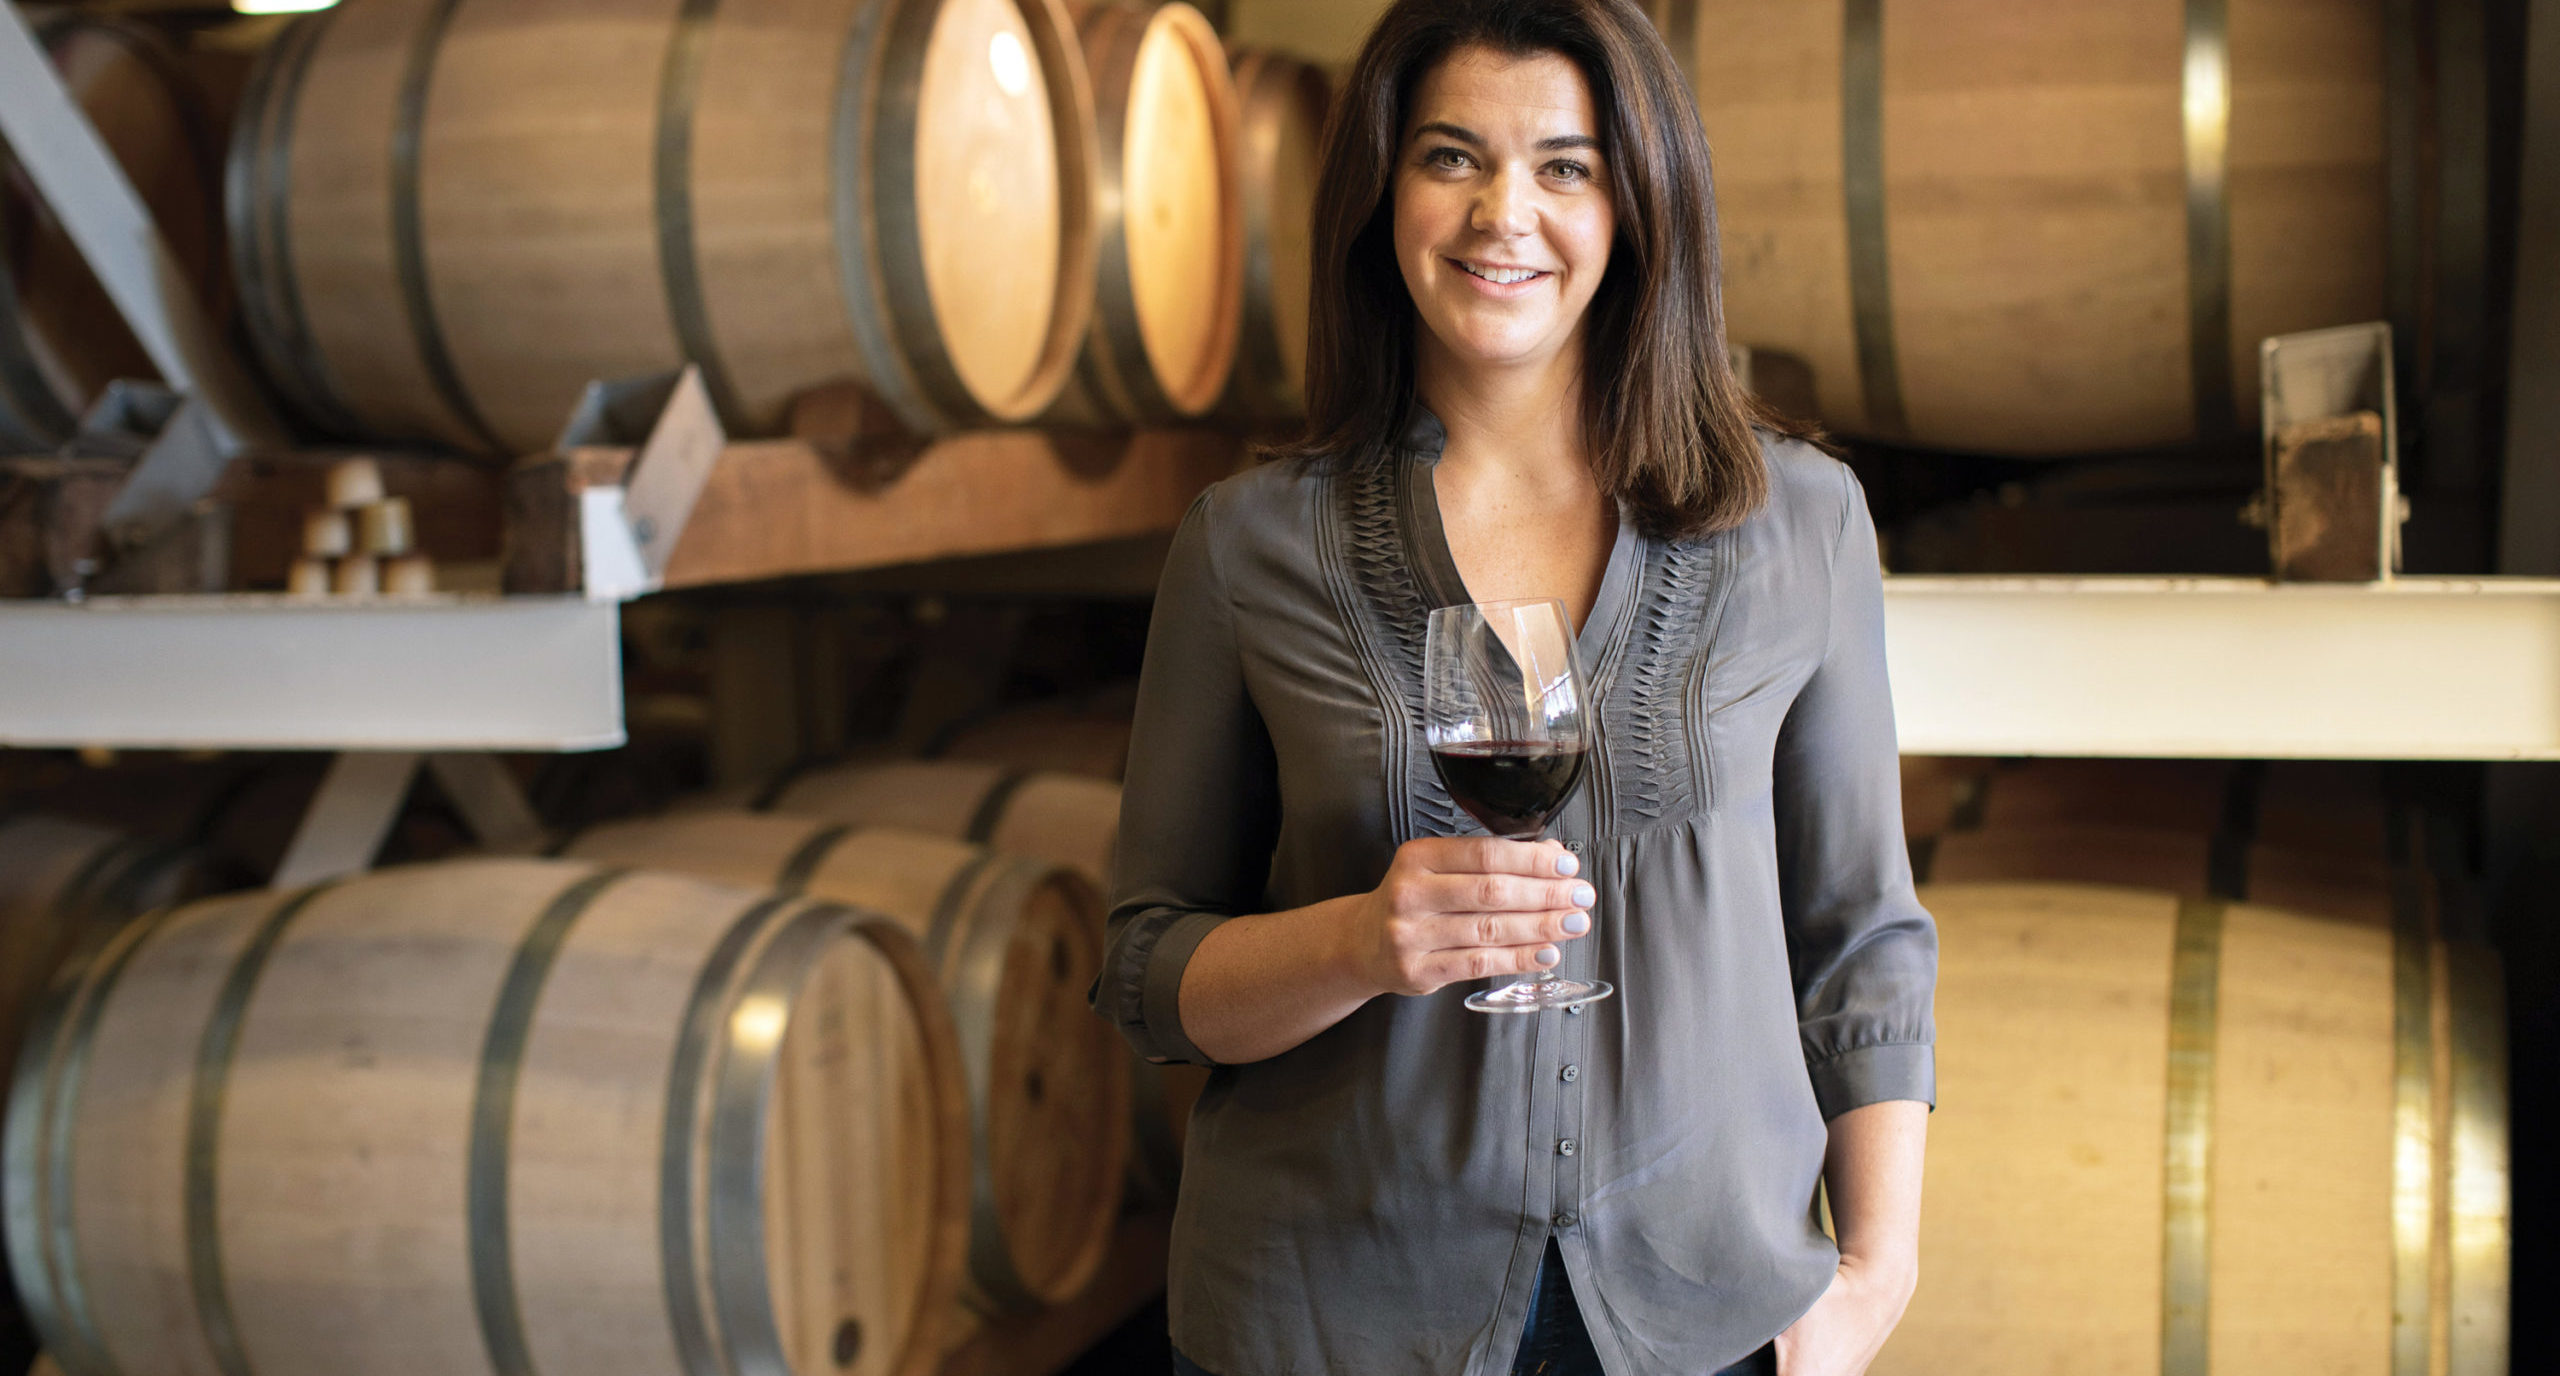 Jordan winemaker Maggie Kruse